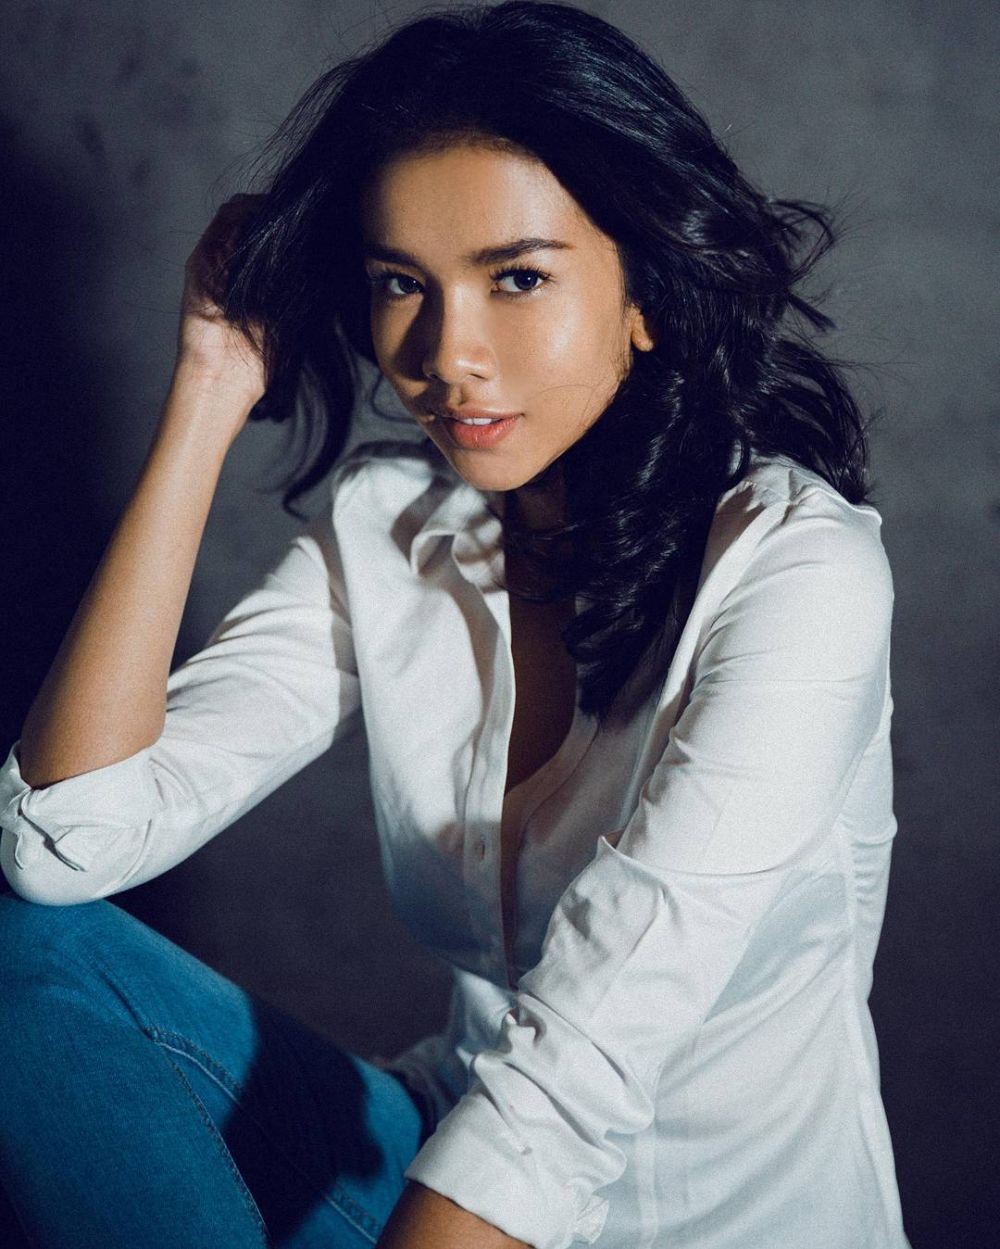 Gaya cantik Dea Rizkita, wakil Indonesia di Miss Grand Internasional